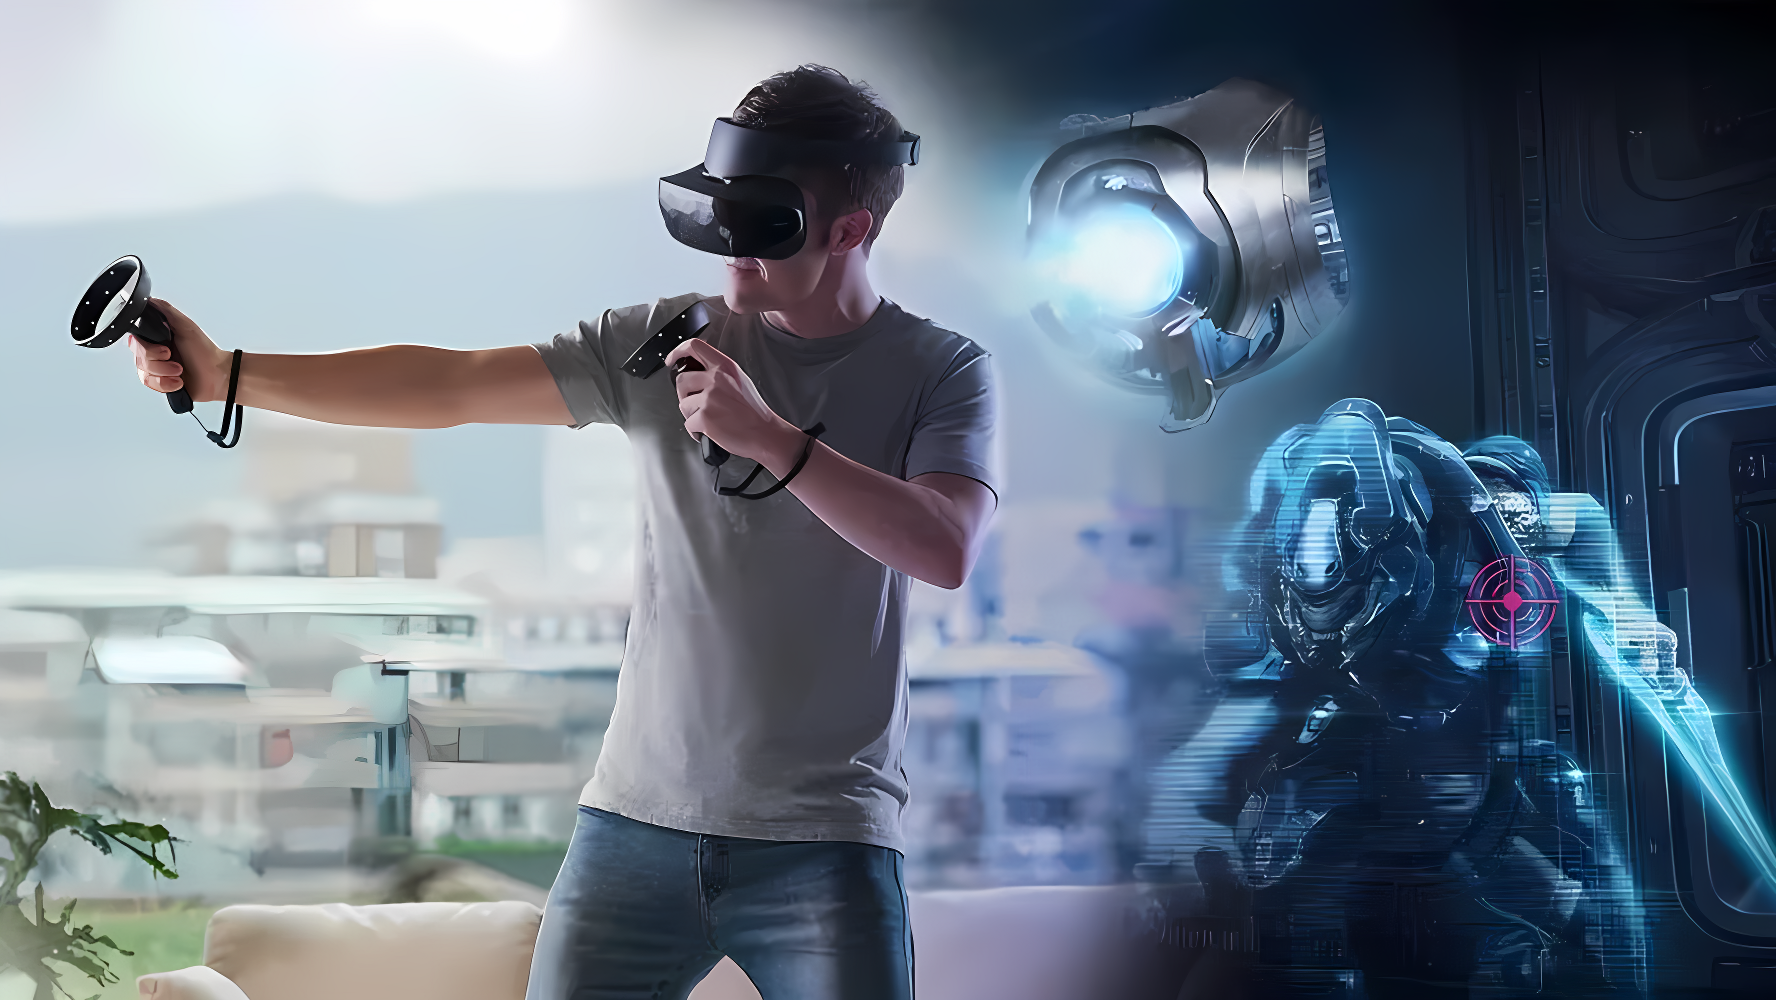 一位男性戴着虚拟现实头盔，在家中体验沉浸式游戏，手持控制器，背景为科幻风格的虚拟界面和机器人影像。